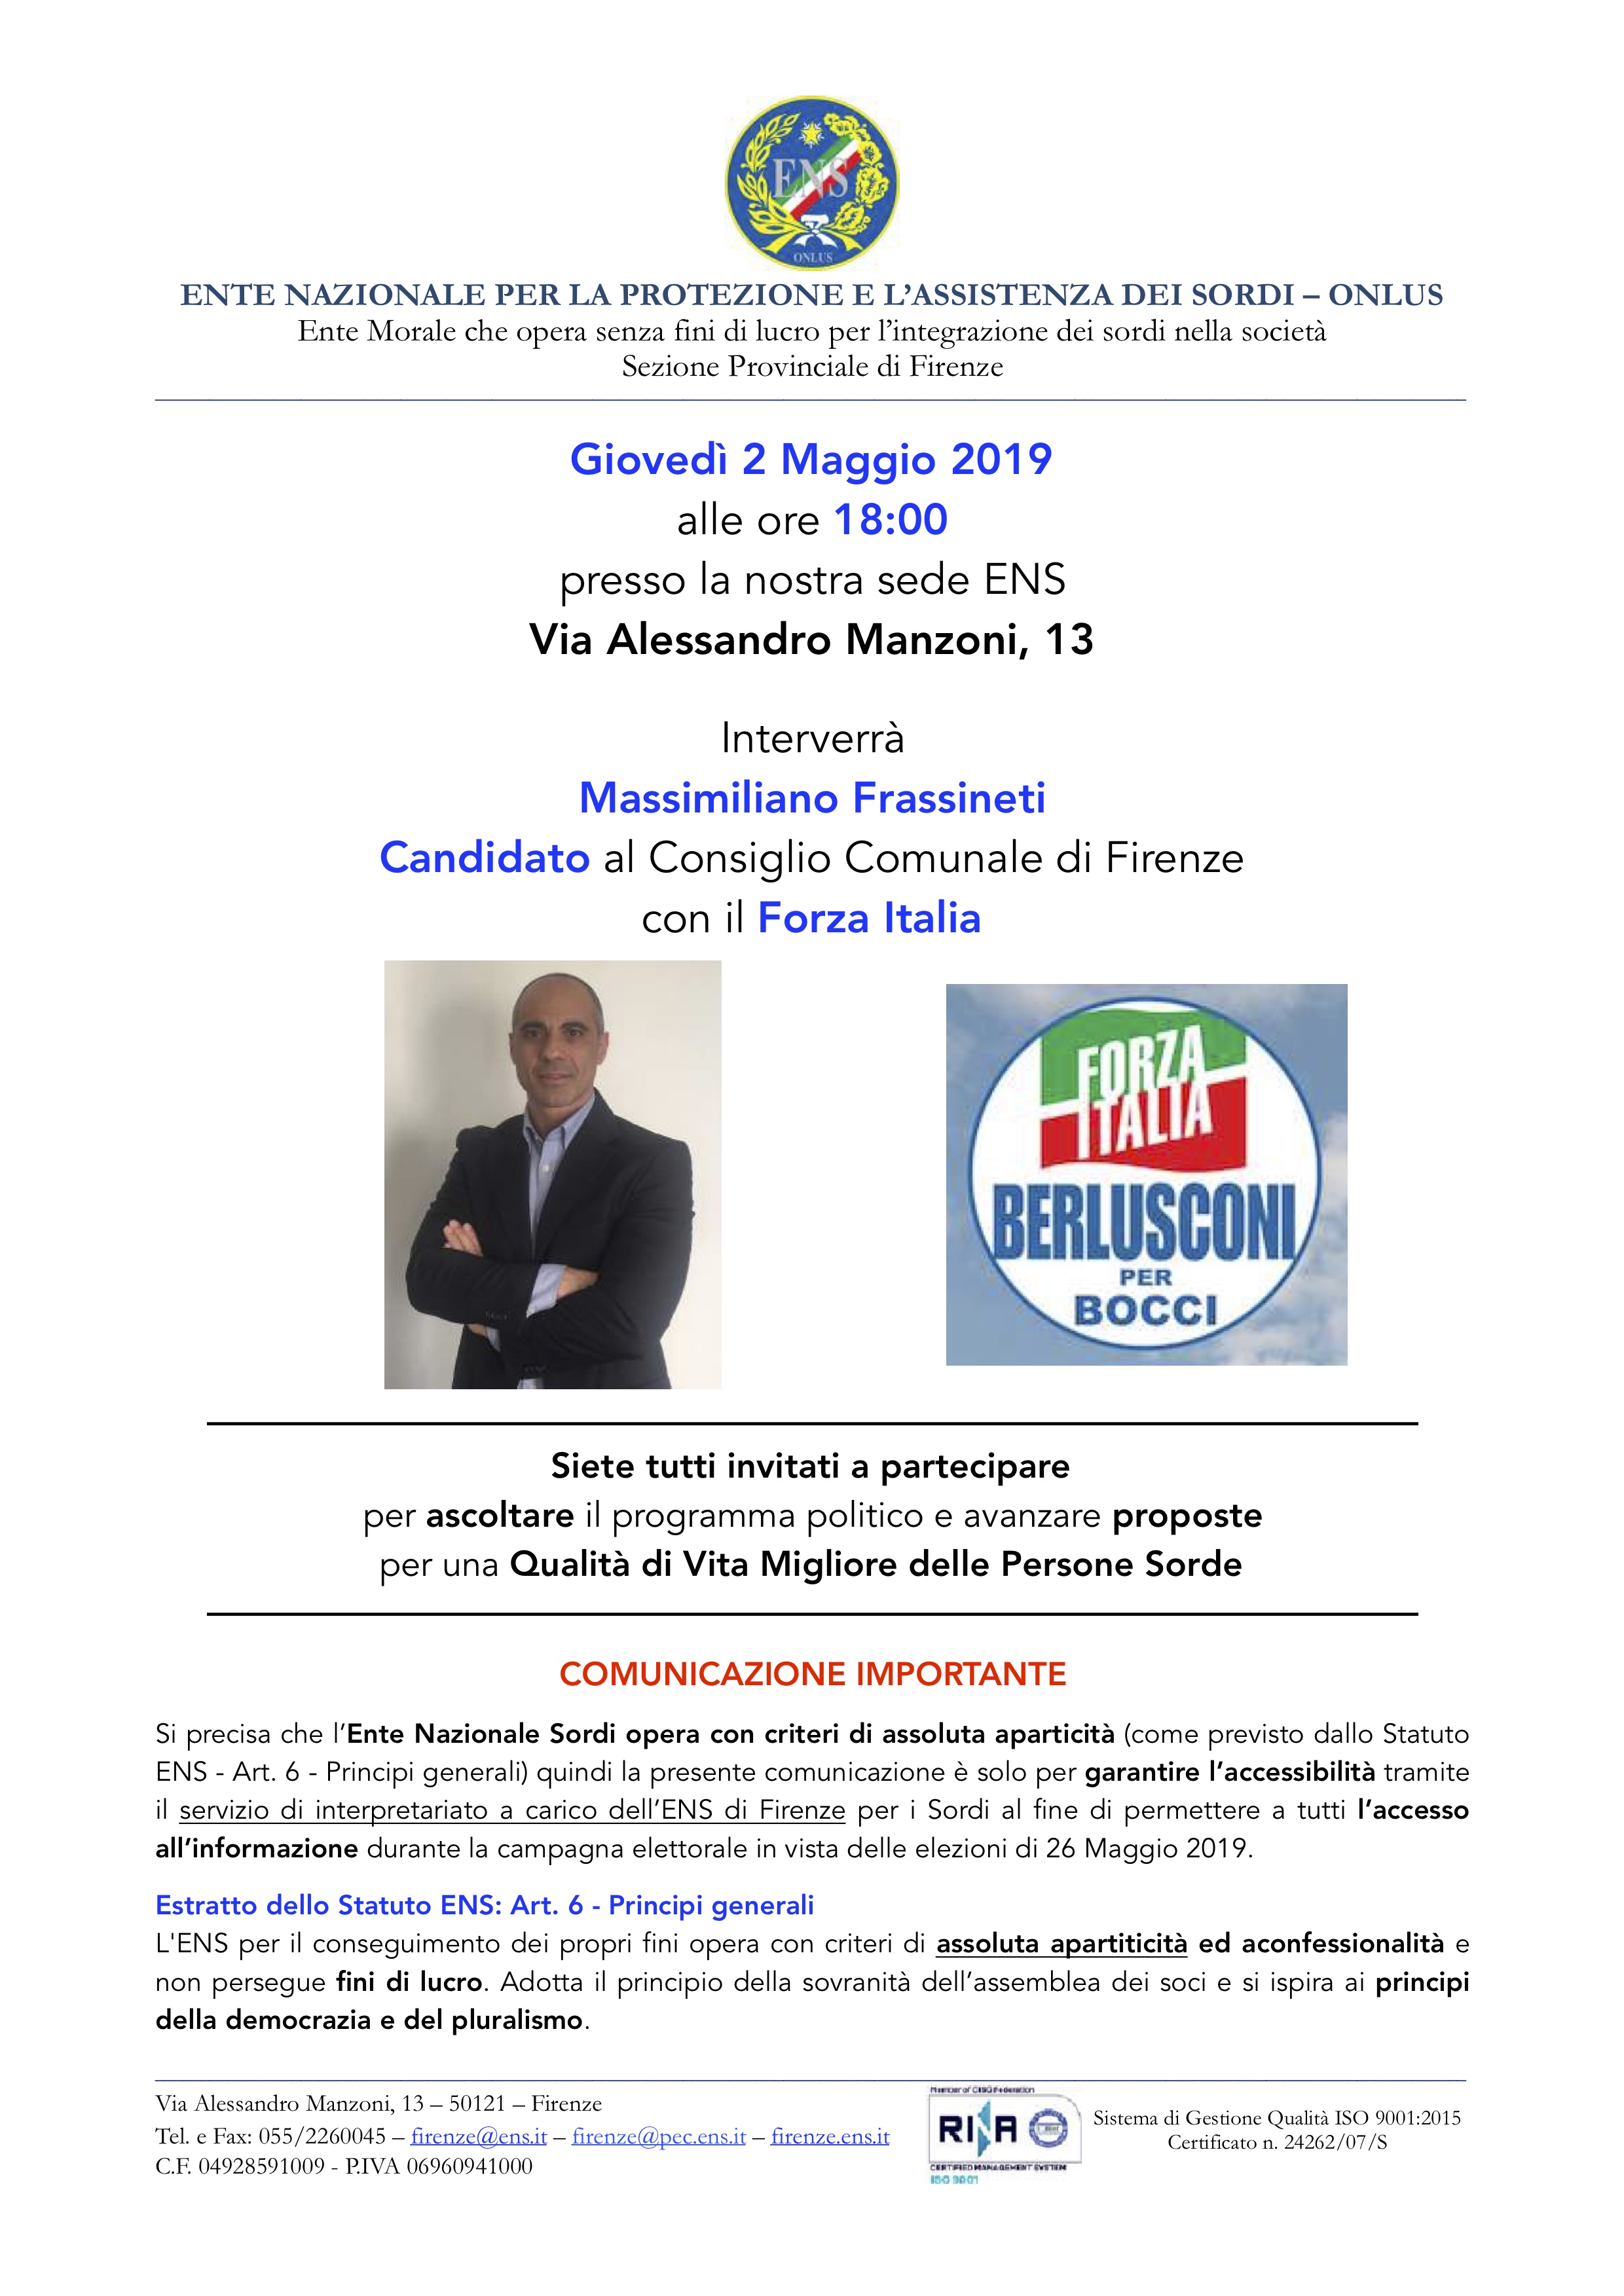 Comunicato per campagna elettorale 26 Maggio 2019 Frassineti Massimiliano 2 Maggio 2019